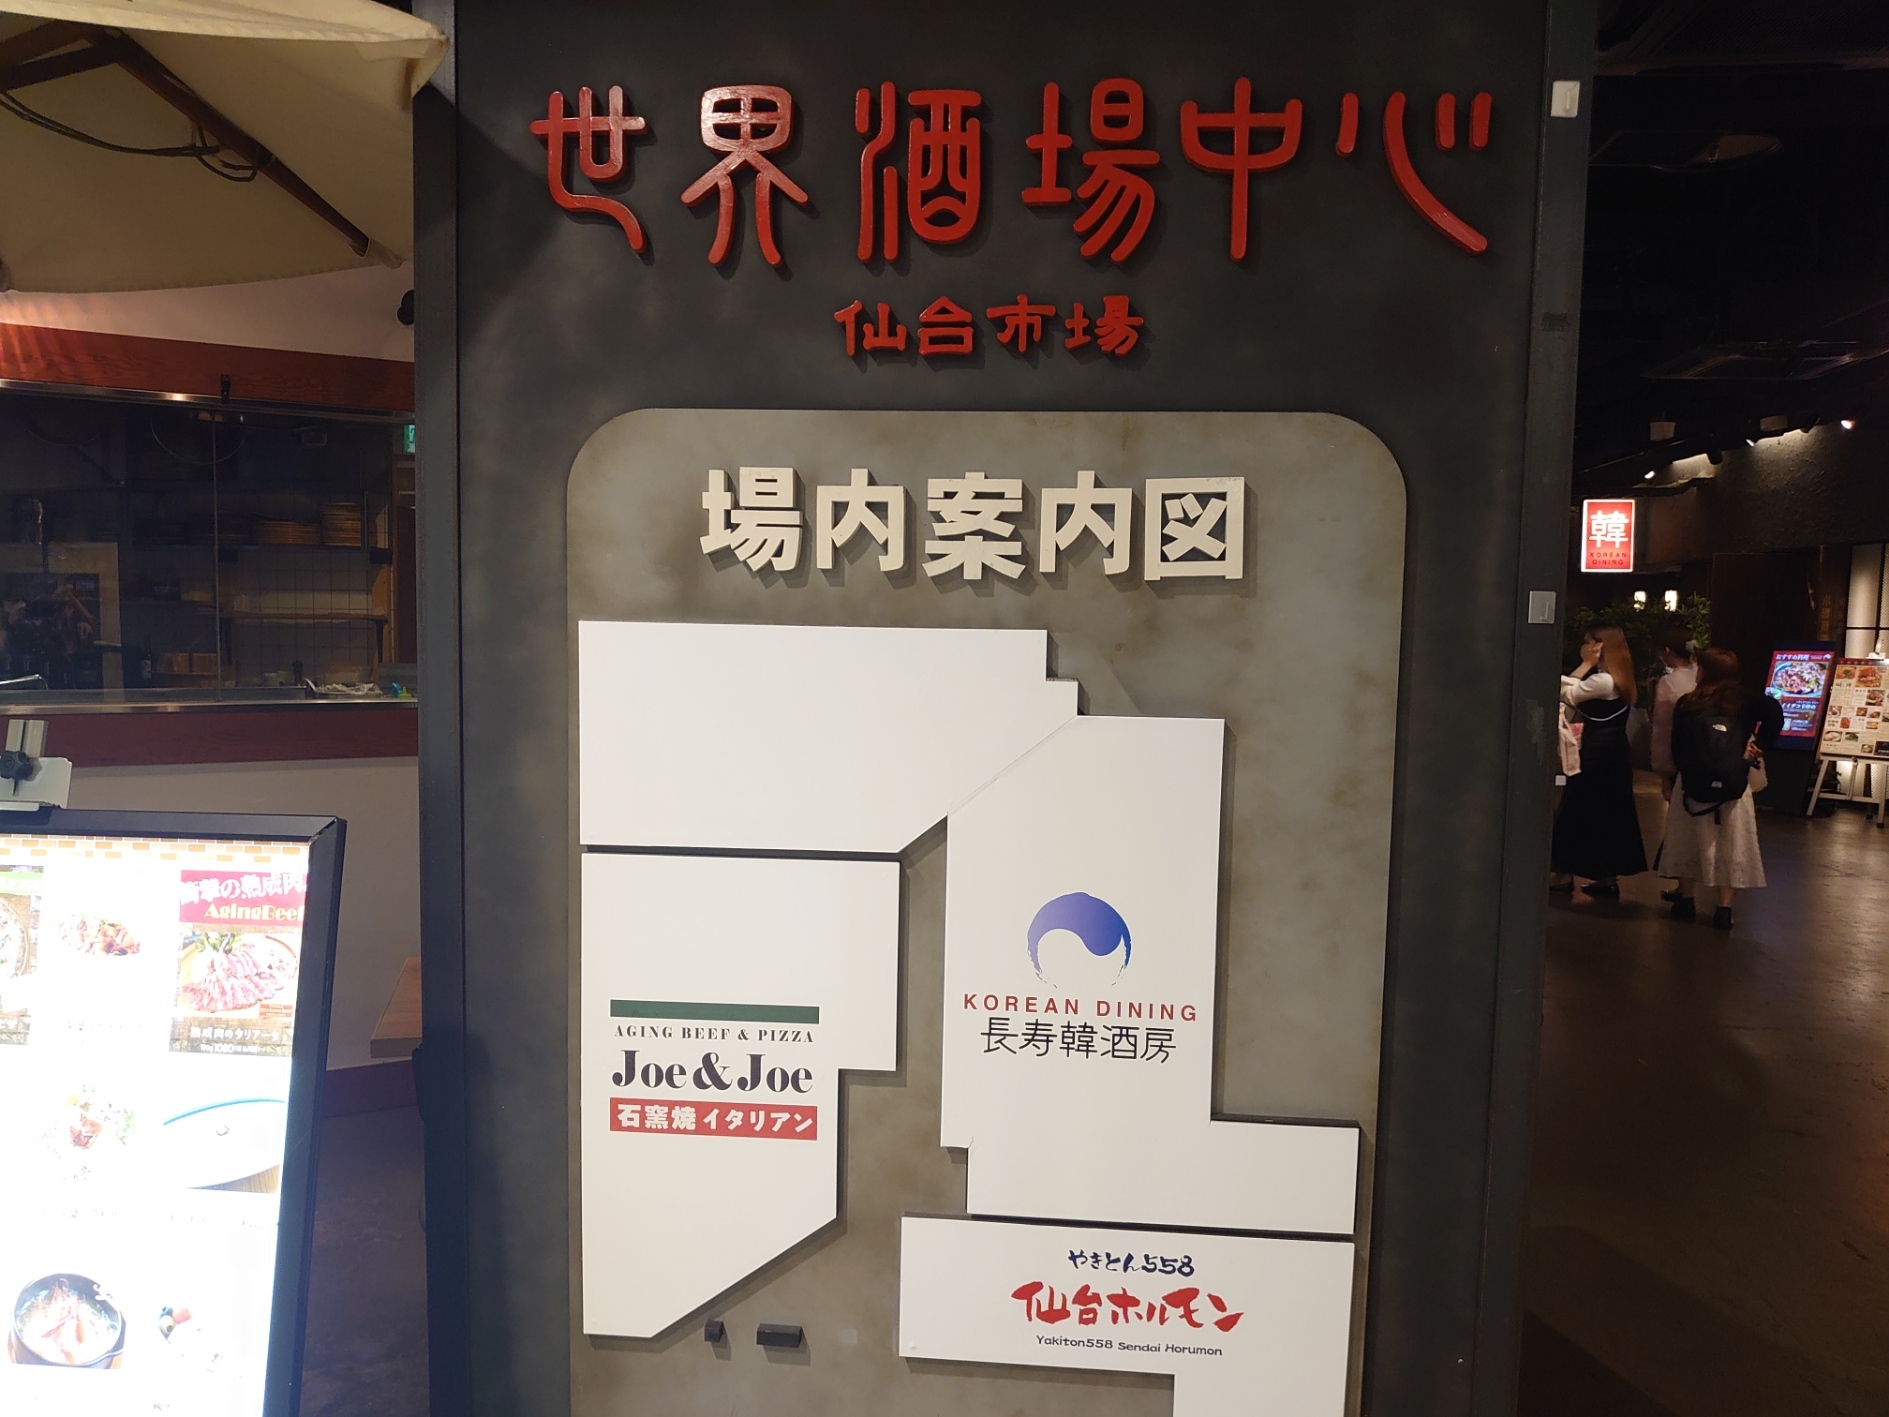 世界酒場中心仙台市場の場内案内図